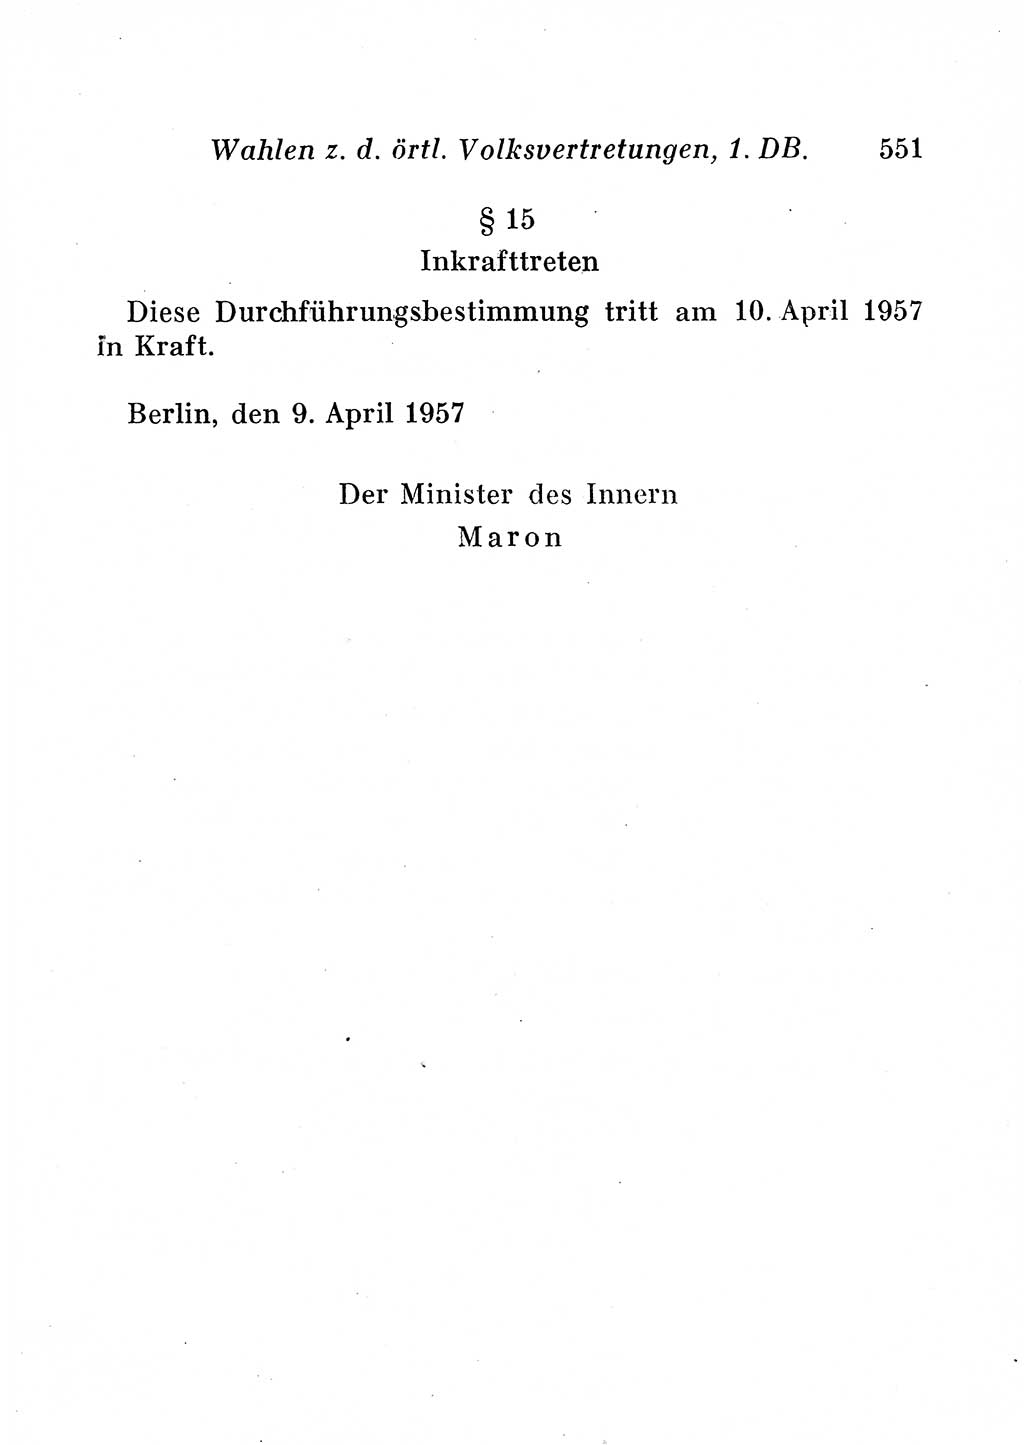 Staats- und verwaltungsrechtliche Gesetze der Deutschen Demokratischen Republik (DDR) 1958, Seite 551 (StVerwR Ges. DDR 1958, S. 551)